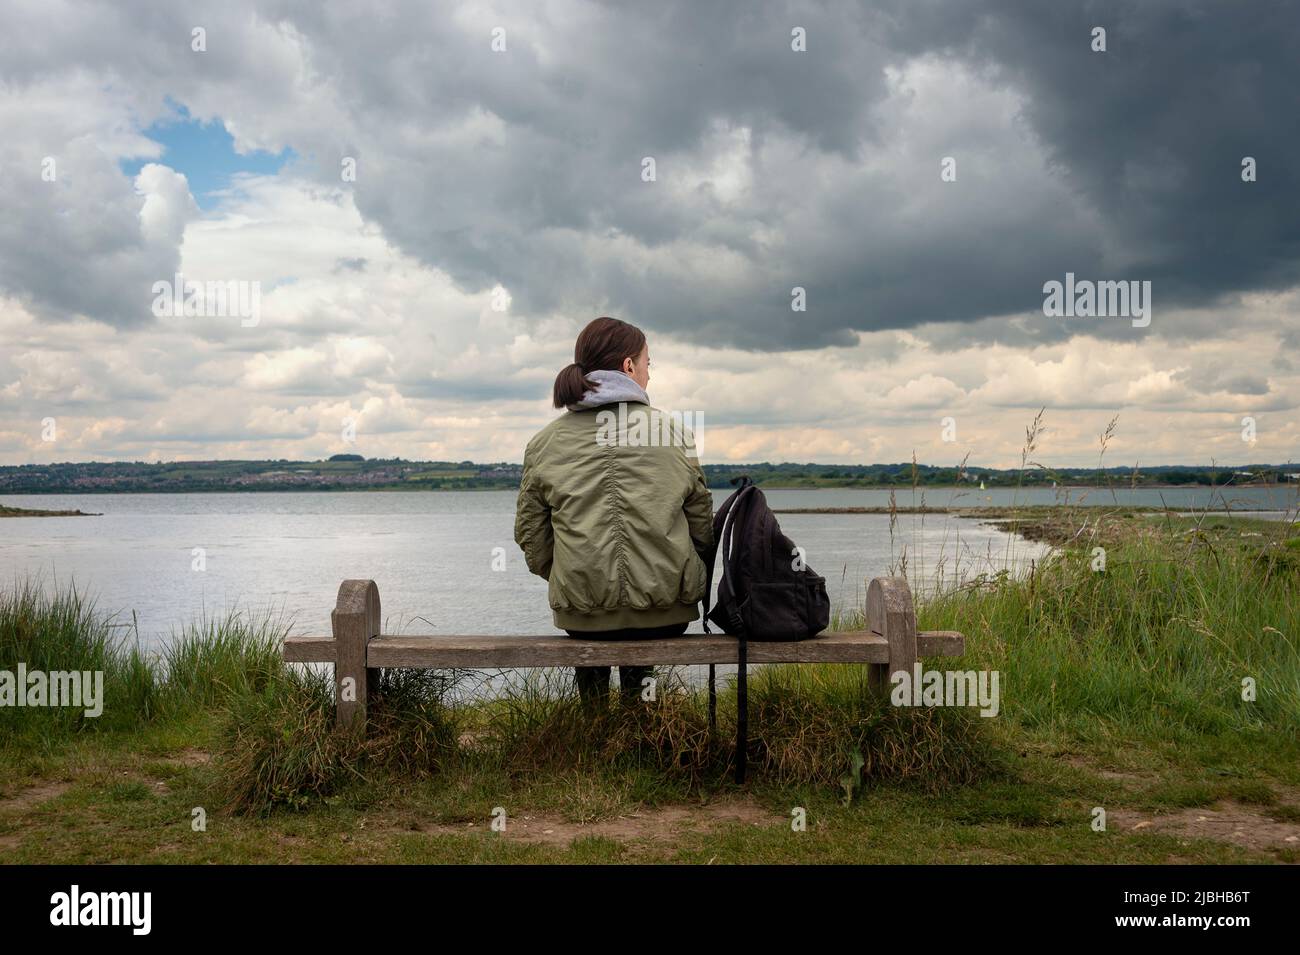 Vista posteriore di una donna seduta su una panchina da sola guardando la vista attraverso l'acqua, cielo tempestoso. Foto Stock